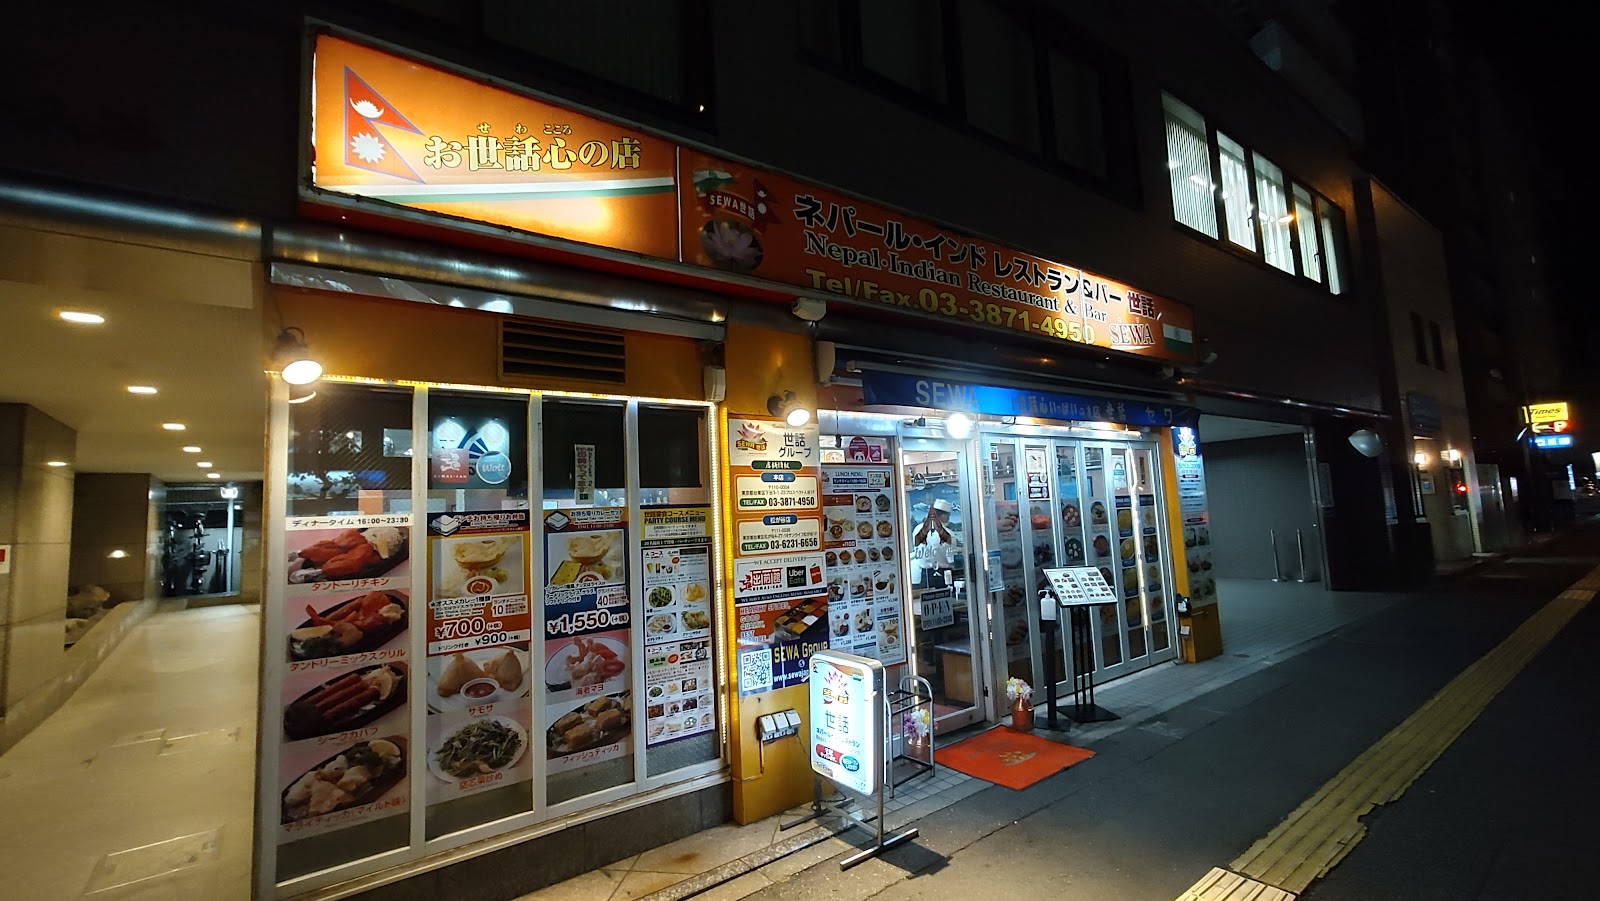 世話ネパール・インドレストラン SEWA下谷本 店にて